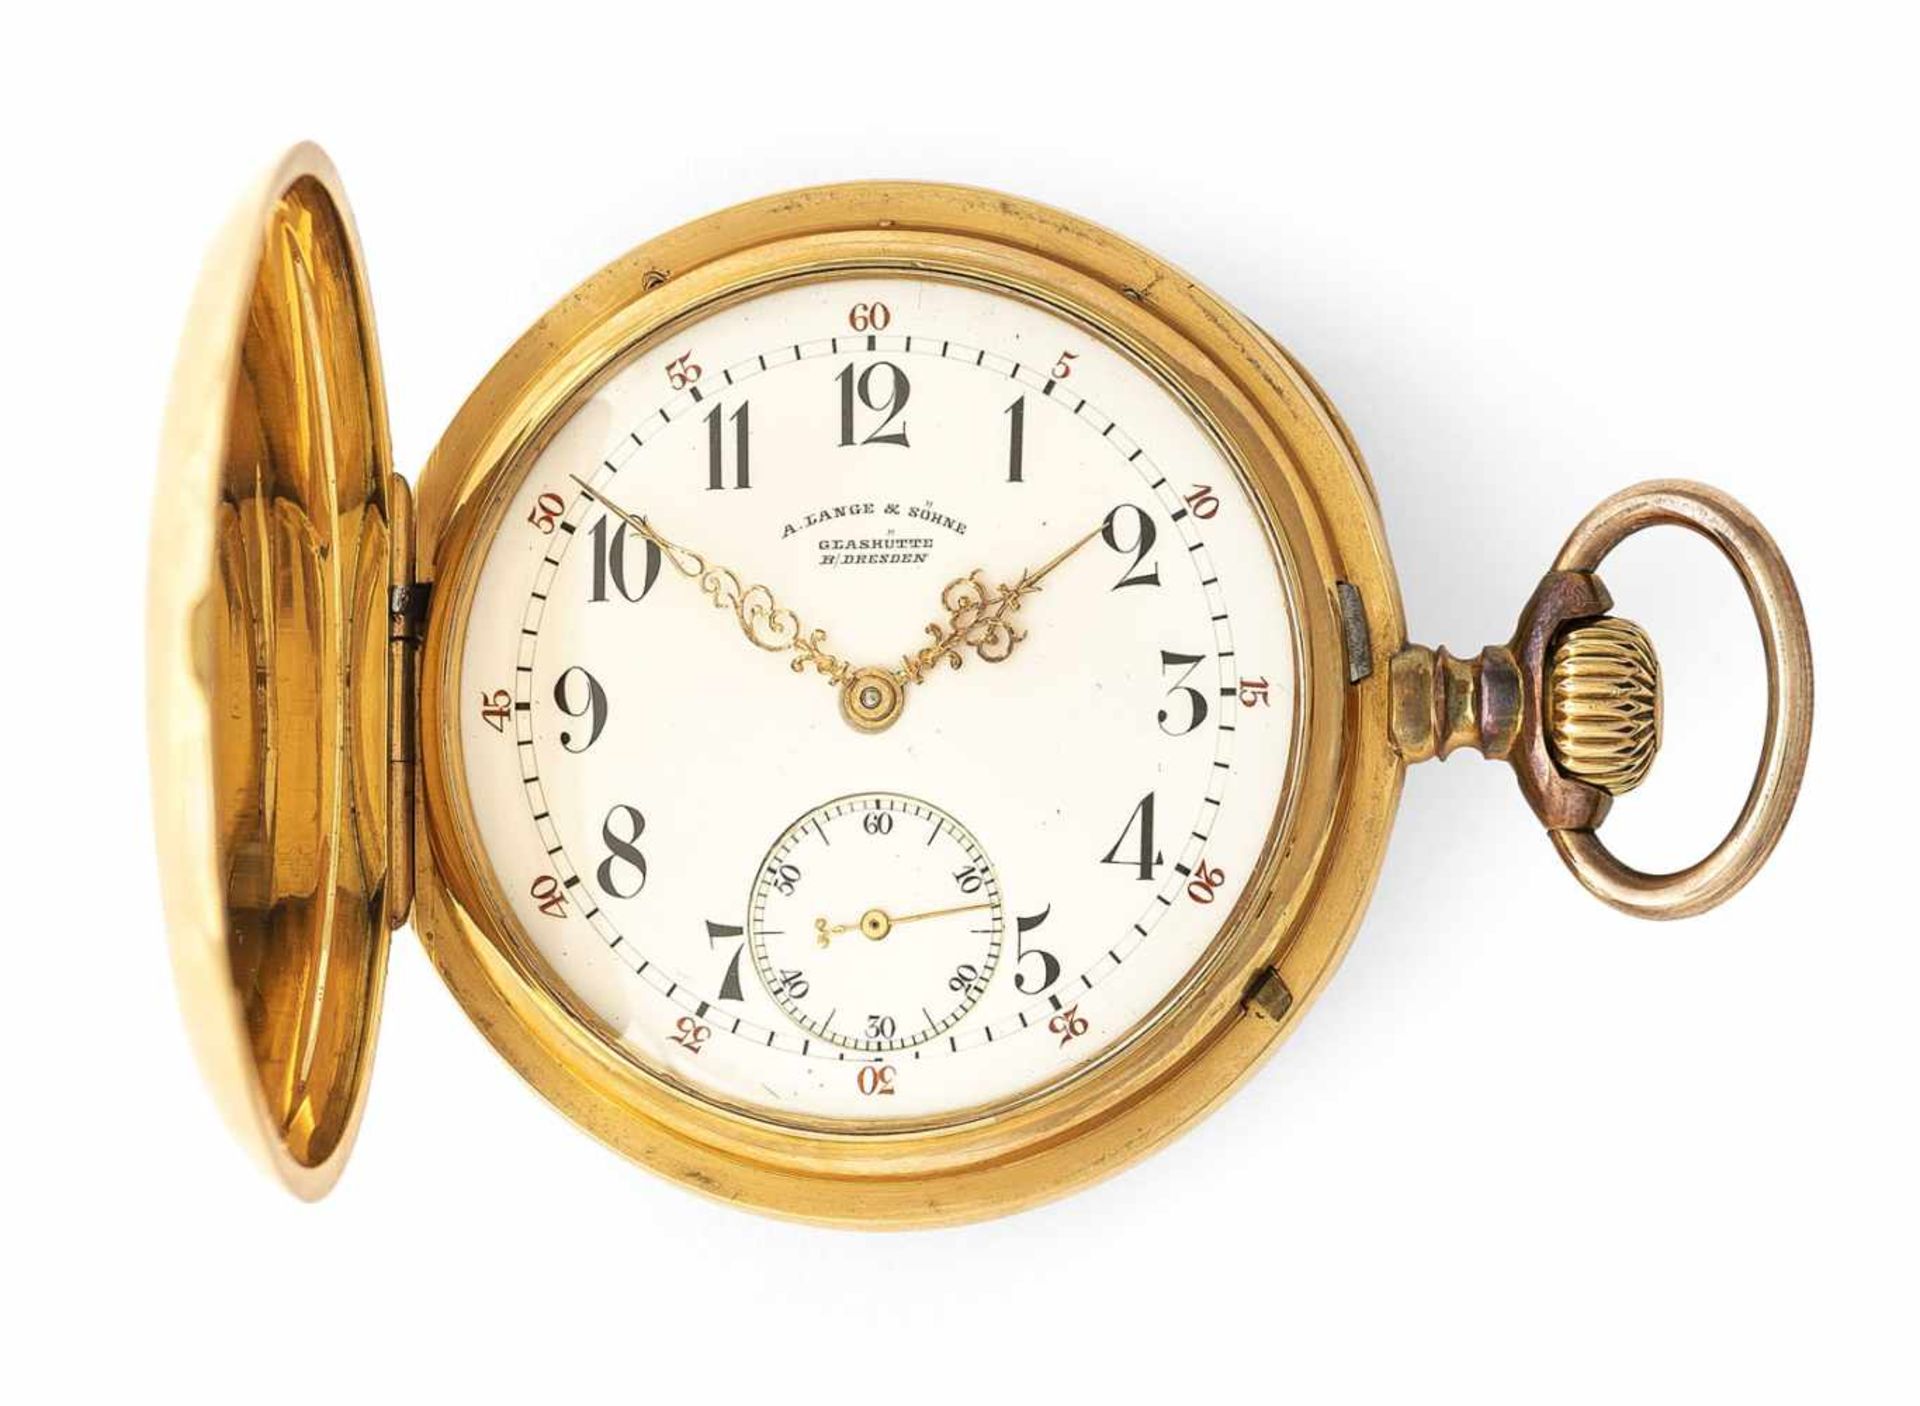 A gold savonette hunter pocket watch, signed A. Lange & Söhne Glashütte B. Dresden 30539, c. 1890.